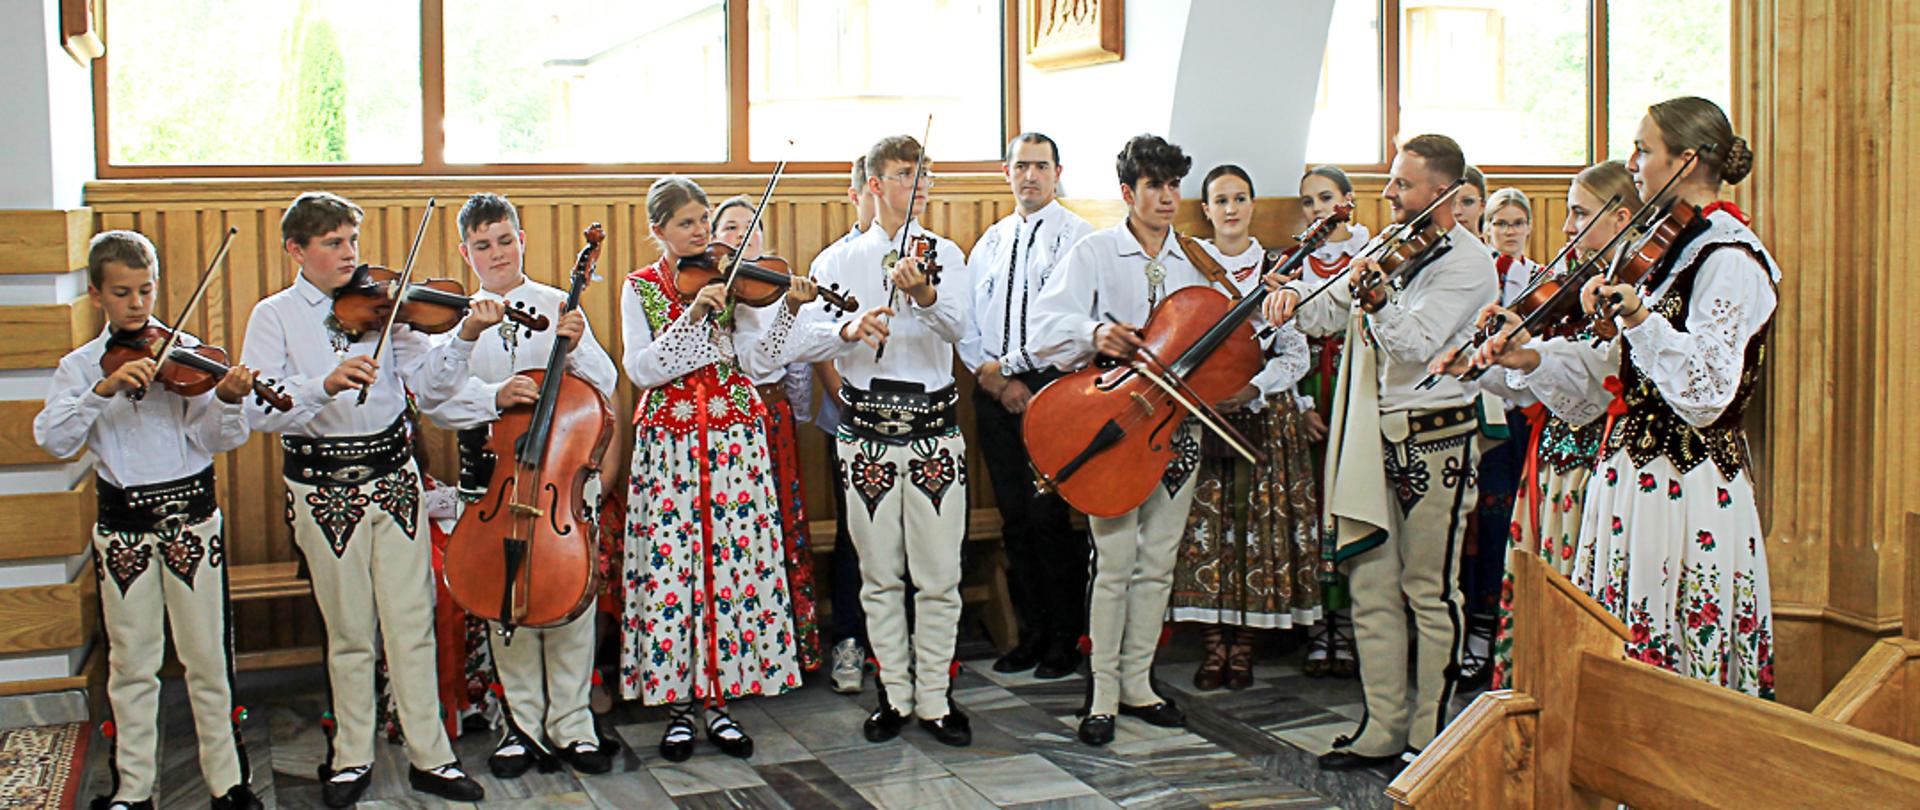 Zespół góralski ubrany w stroje regionalne grający na skrzypcach i basach stojący w kościele